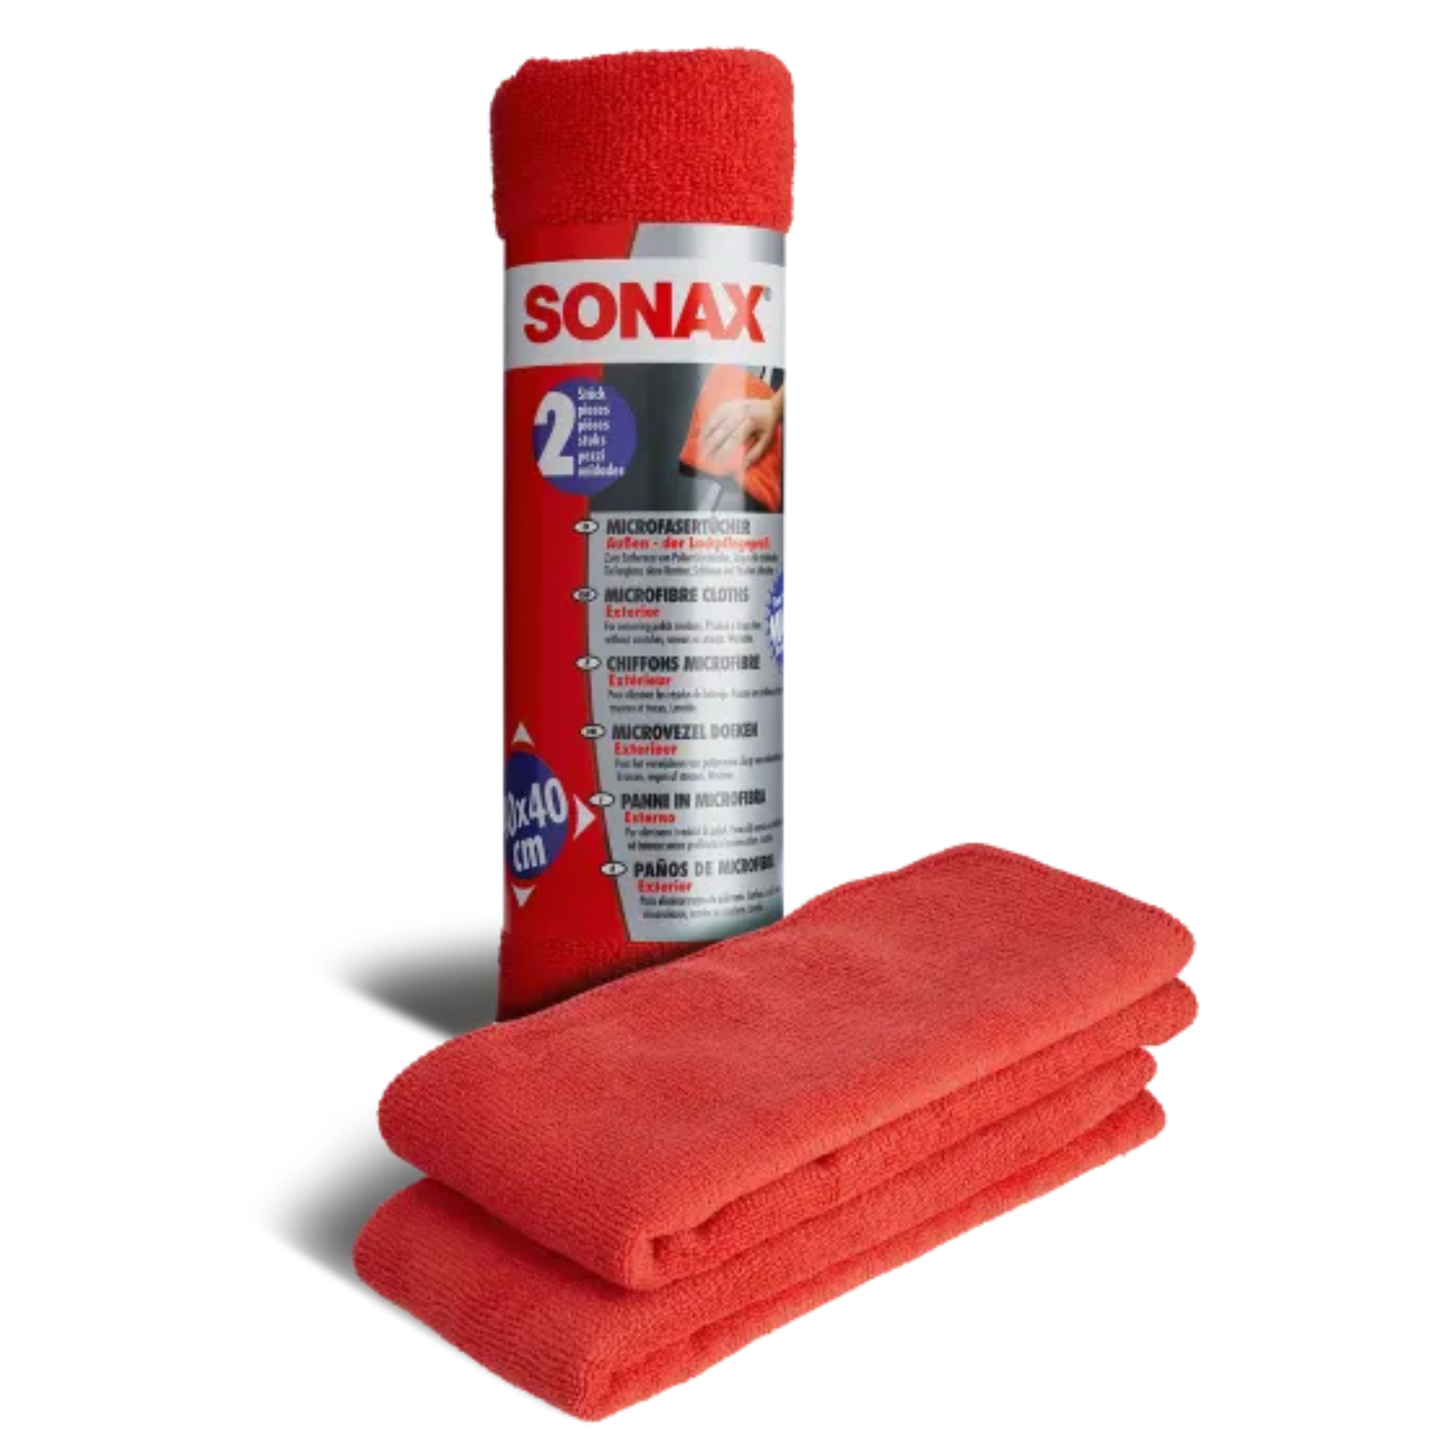 SONAX Microfasertuch Außen - der Lackpflegeprofi